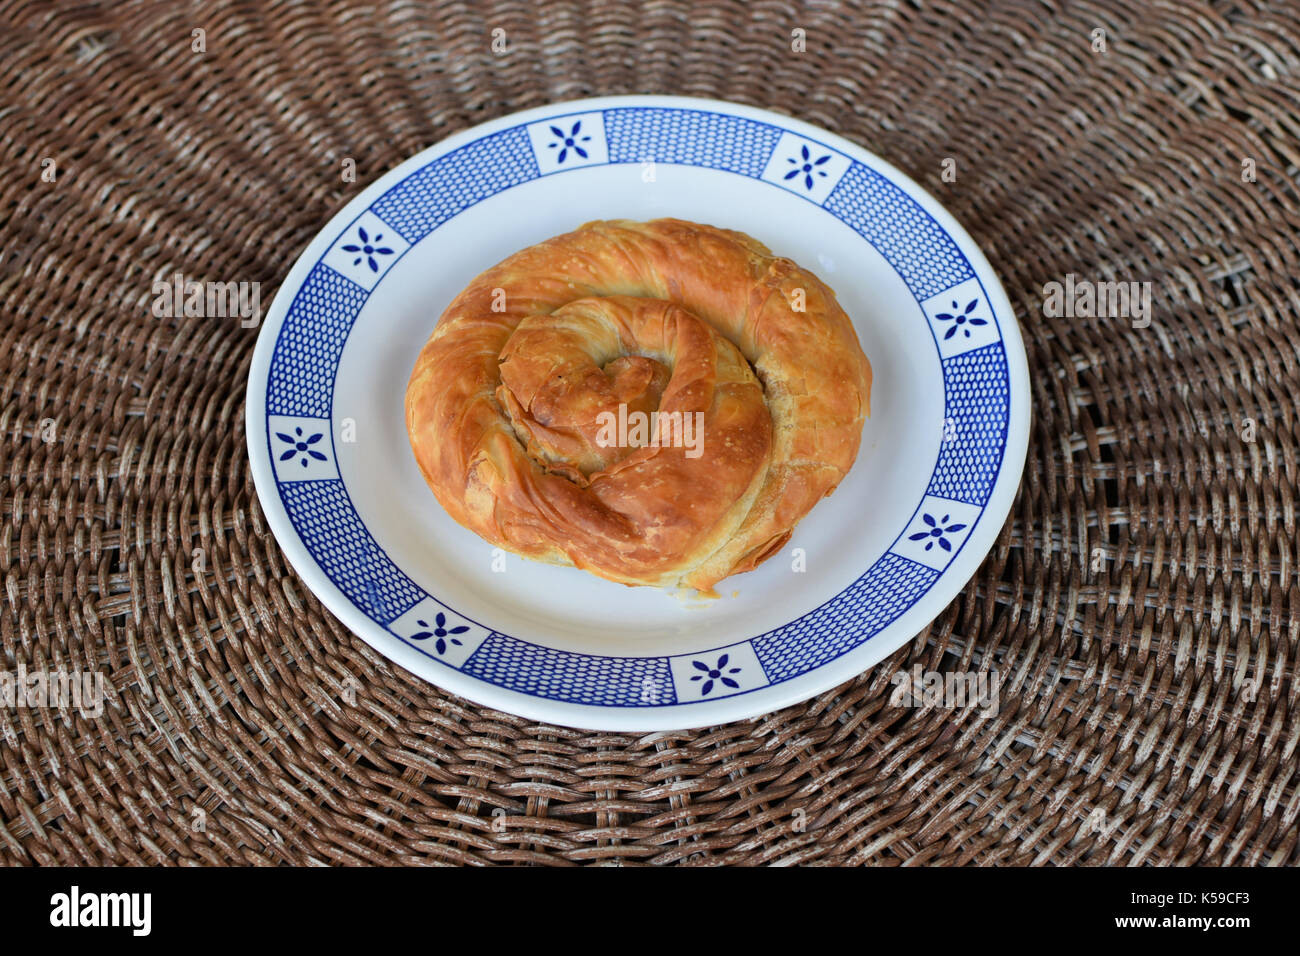 Griechische Spirale pie traditionell gefüllt mit Käse, Lauch oder Spinat. Vegetarische Küche Vorspeisen Teller. Stockfoto